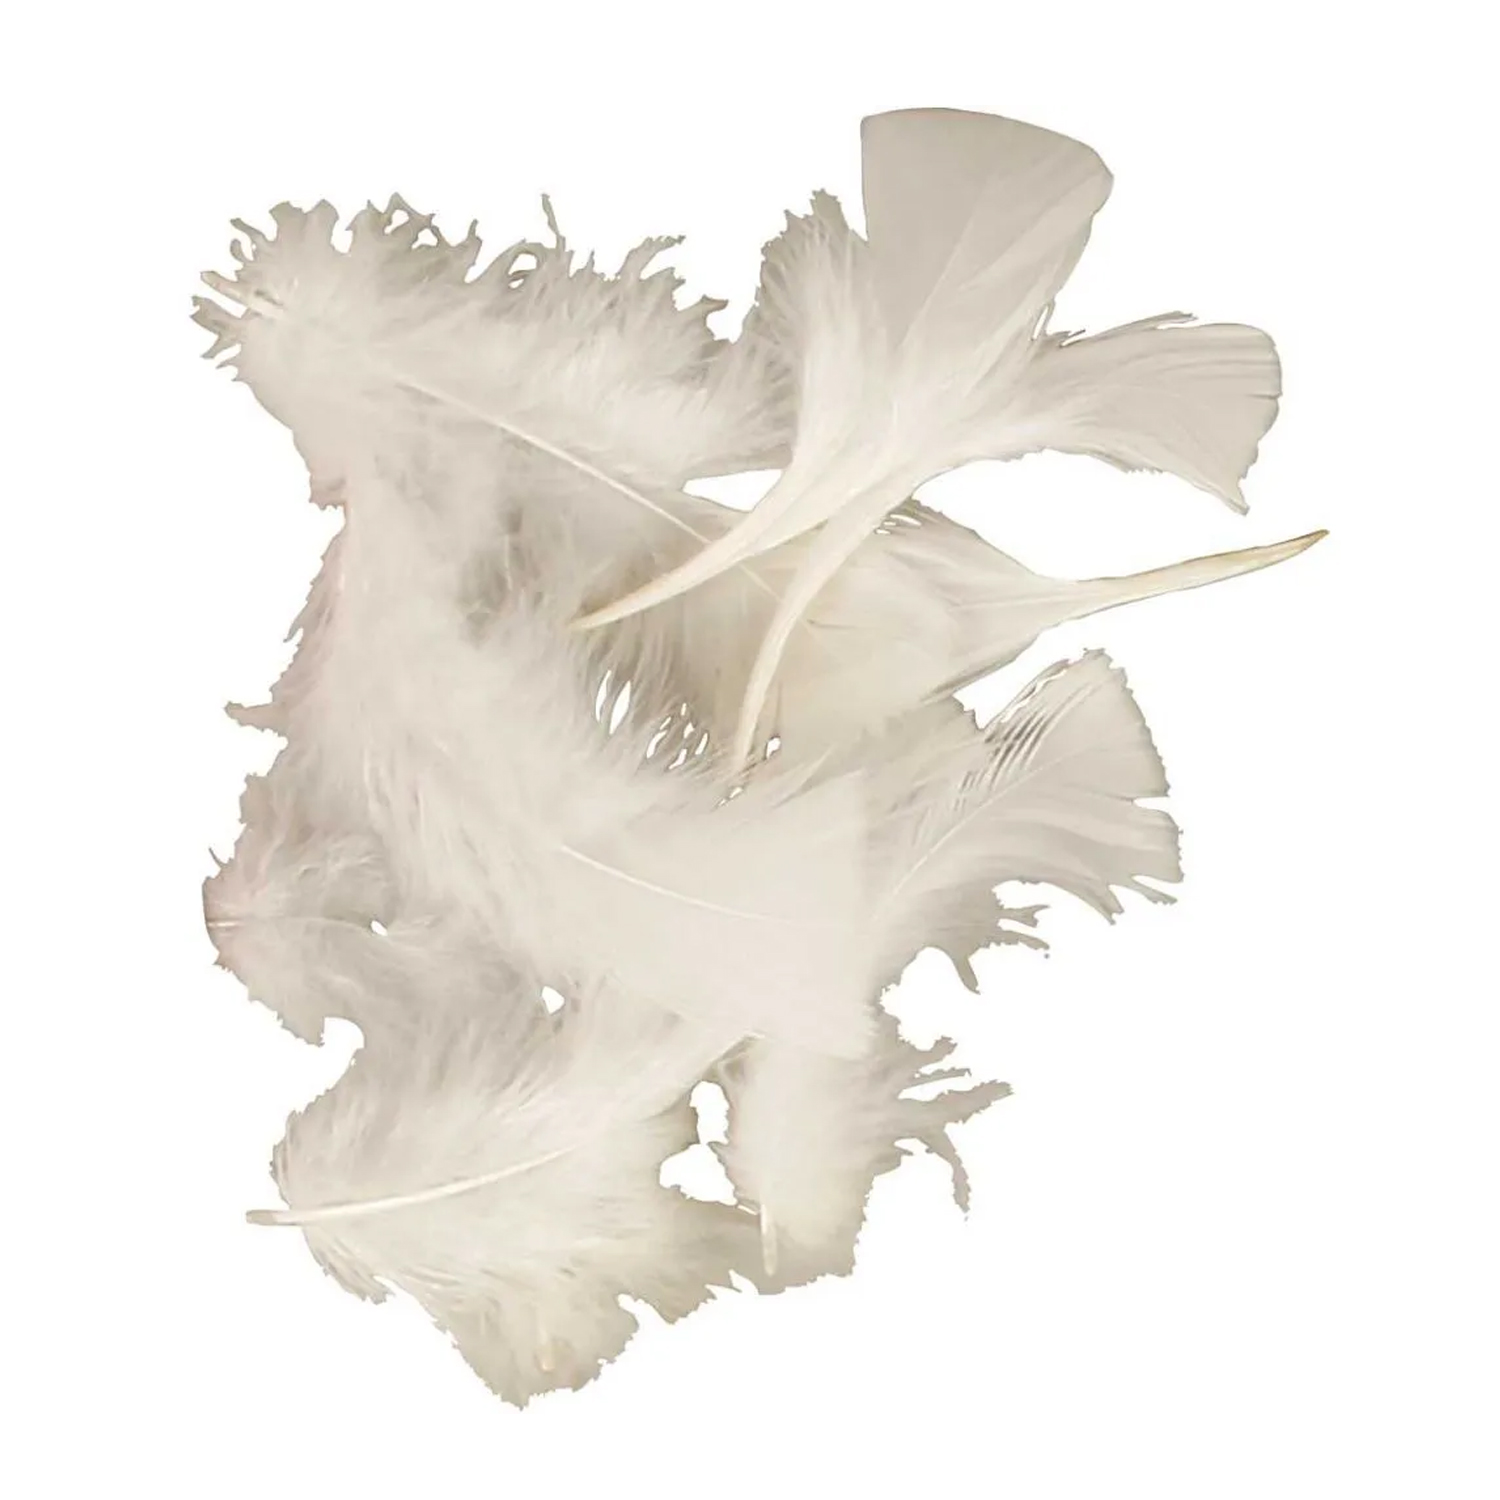 NEU Großpackung Truthahnfedern Weiß gefärbt, 50 g